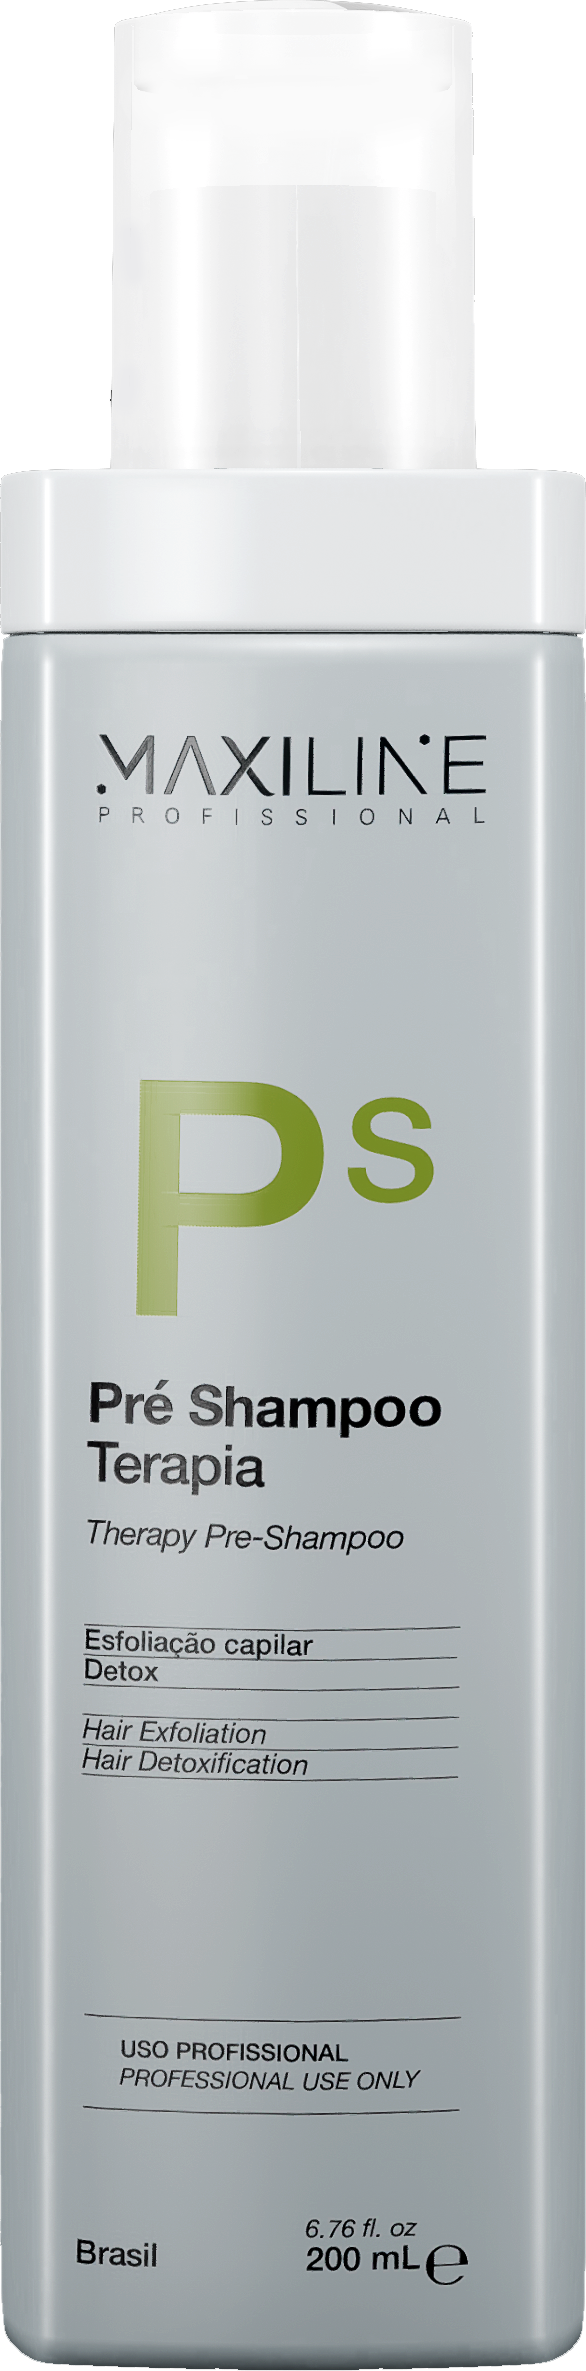 Pré Shampoo Terapia